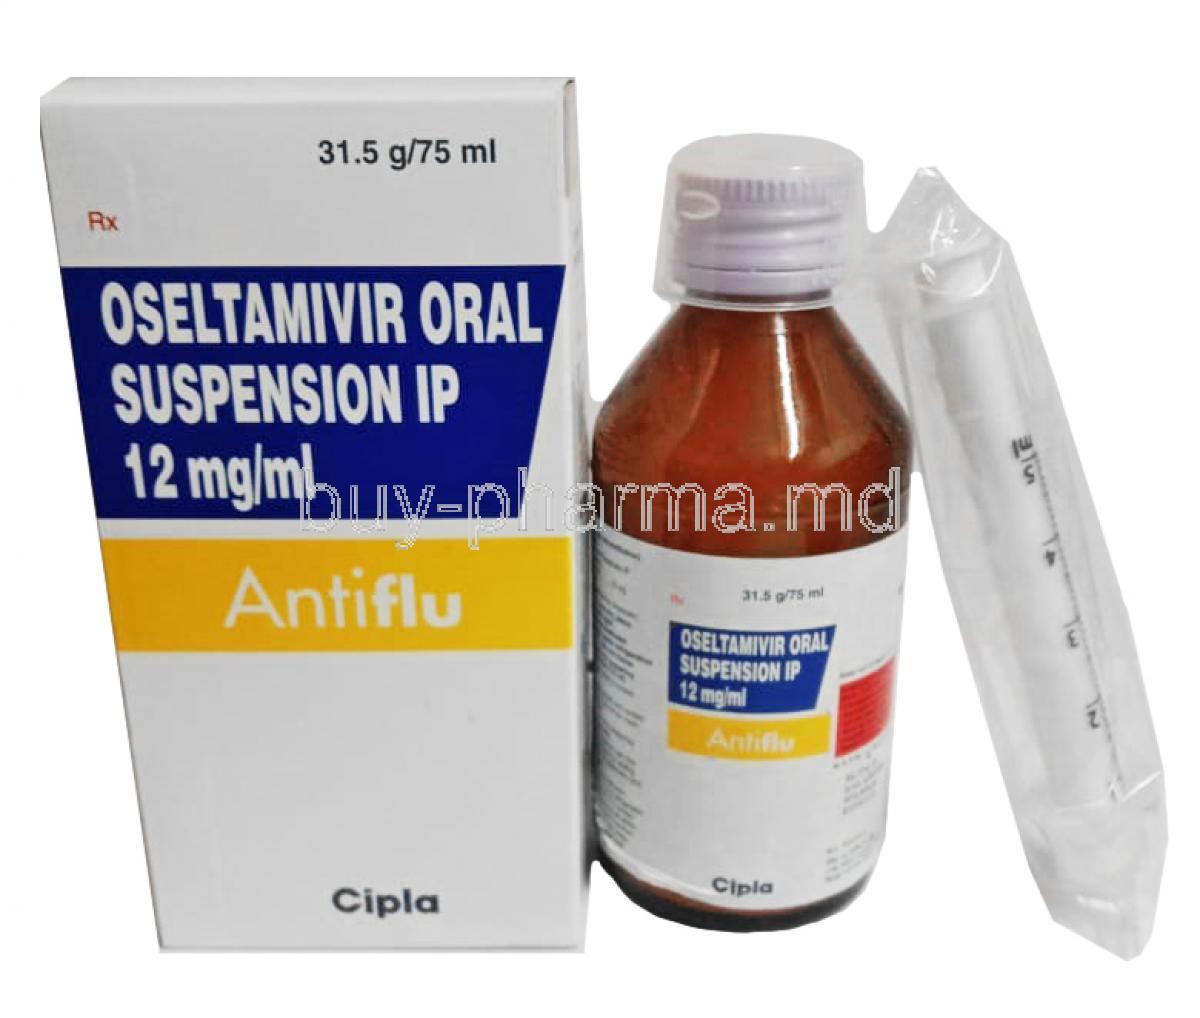 Antiflu Oral Suspension, Oseltamivir Phosphate box and bottle